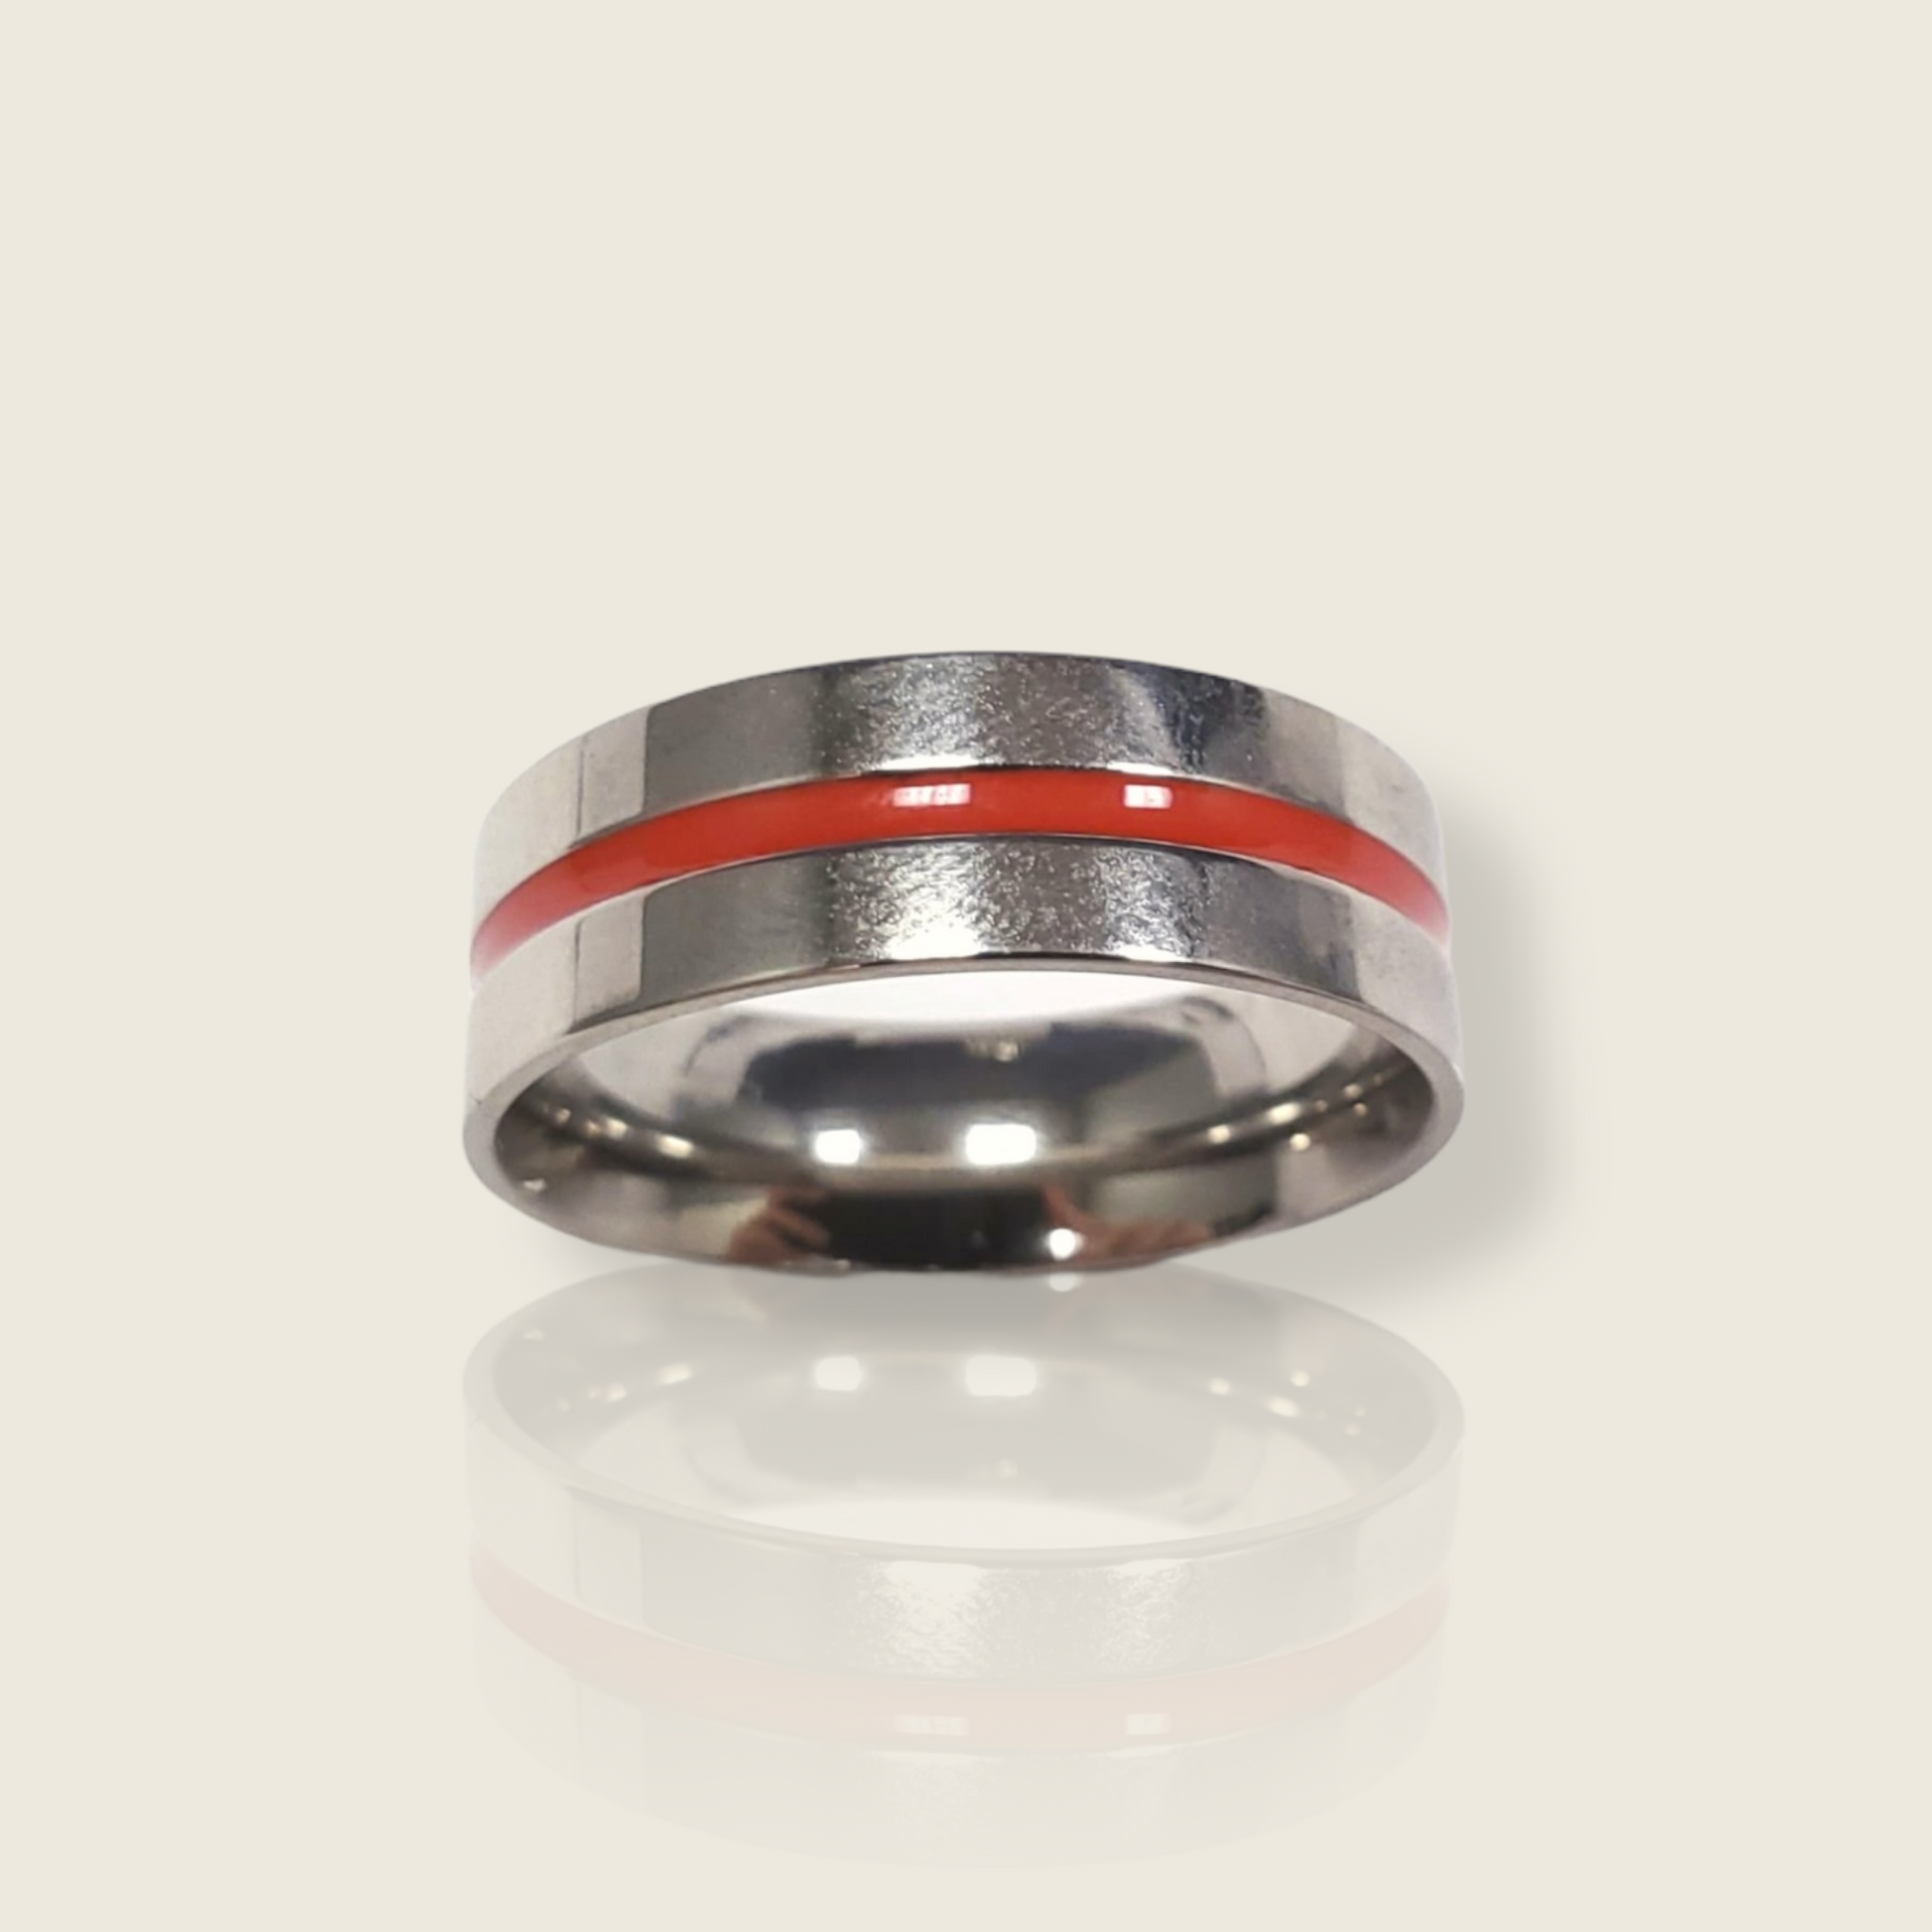 Fire Fighter's Ring - De La Cruz Jewelry